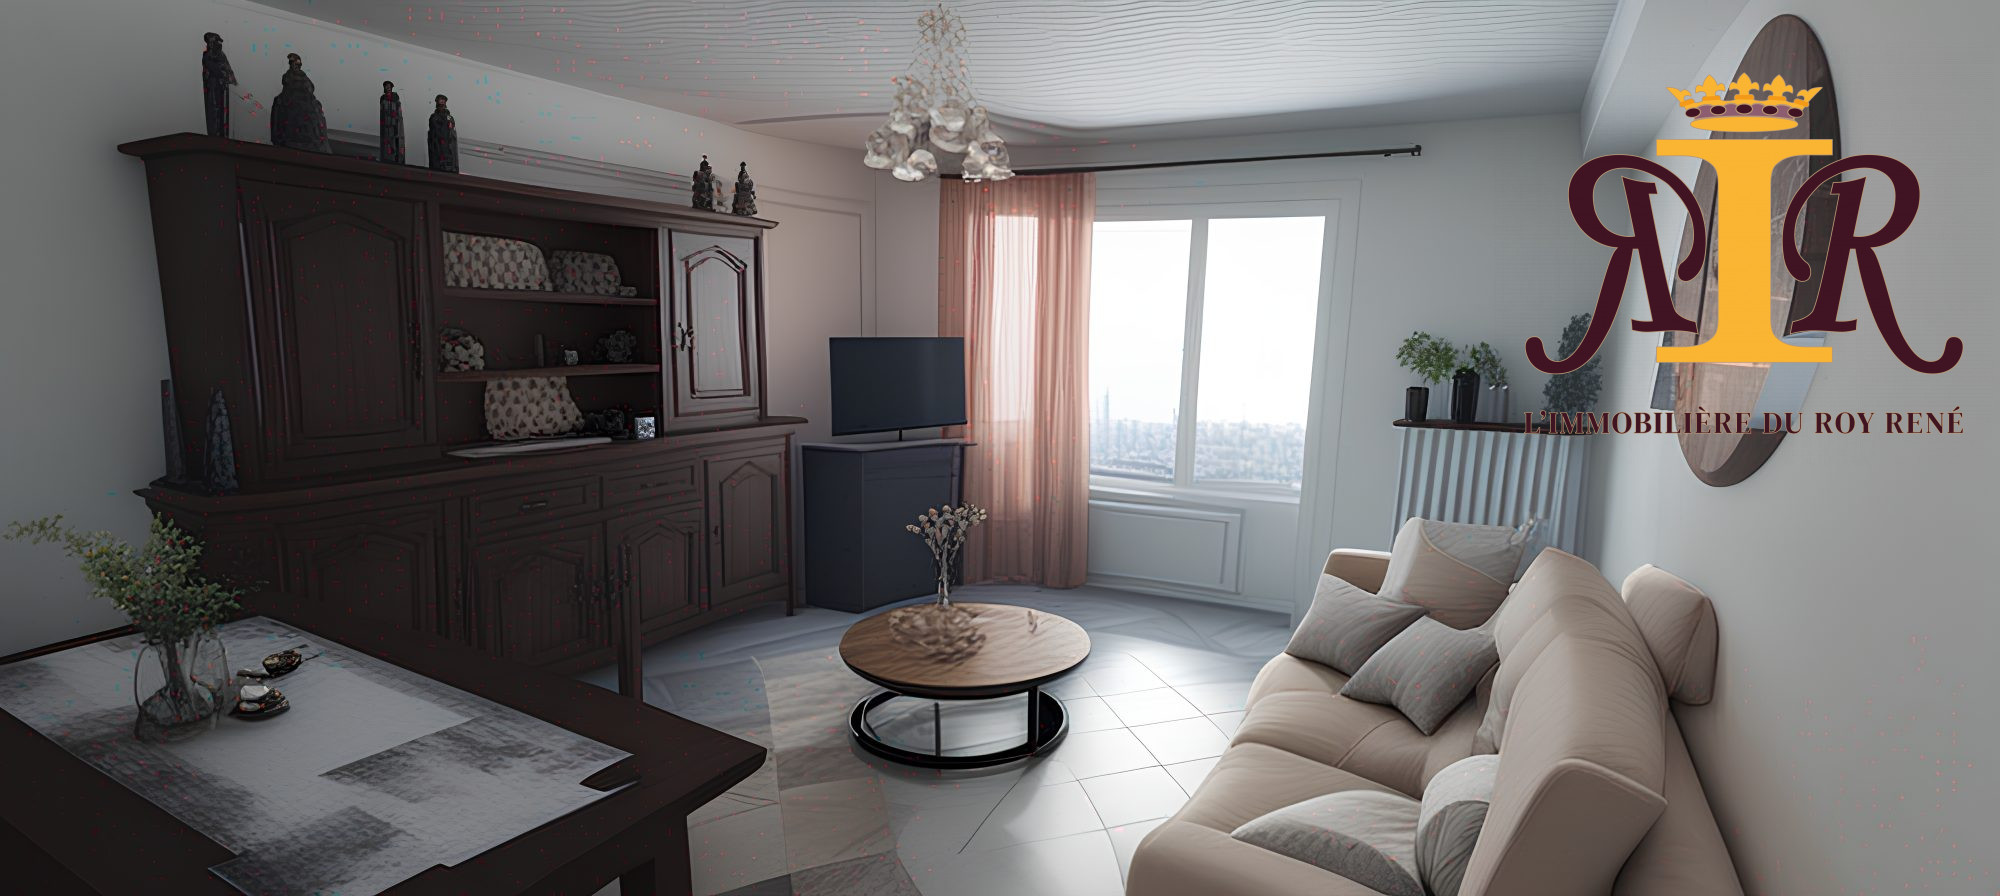 Vente Appartement 61m² 3 Pièces à Manosque (04100) - Immobiliere Du Roy Rene